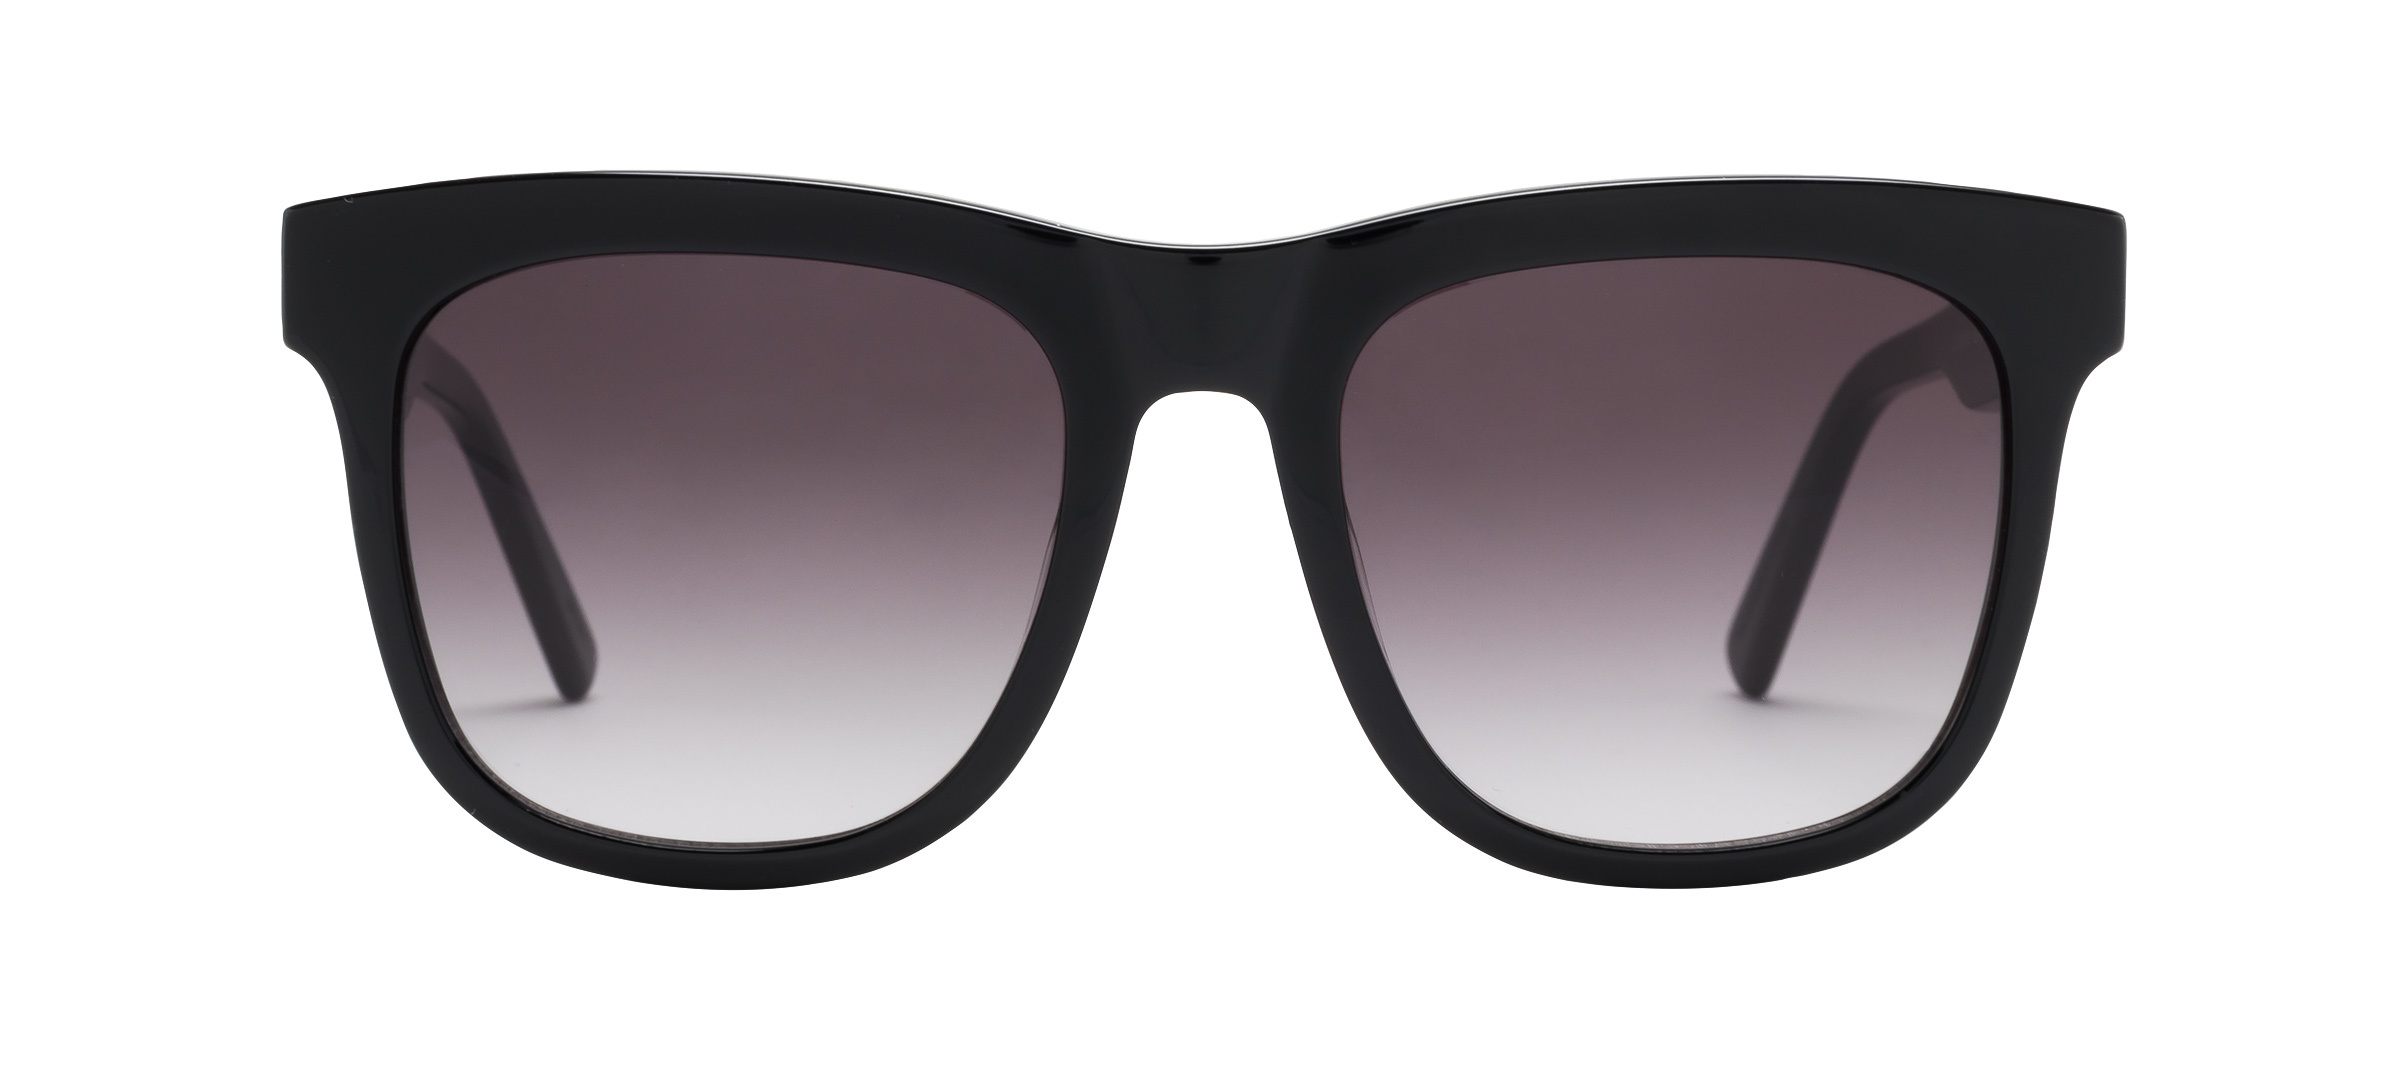 Polarized Sunglasses - buy online | Coastal